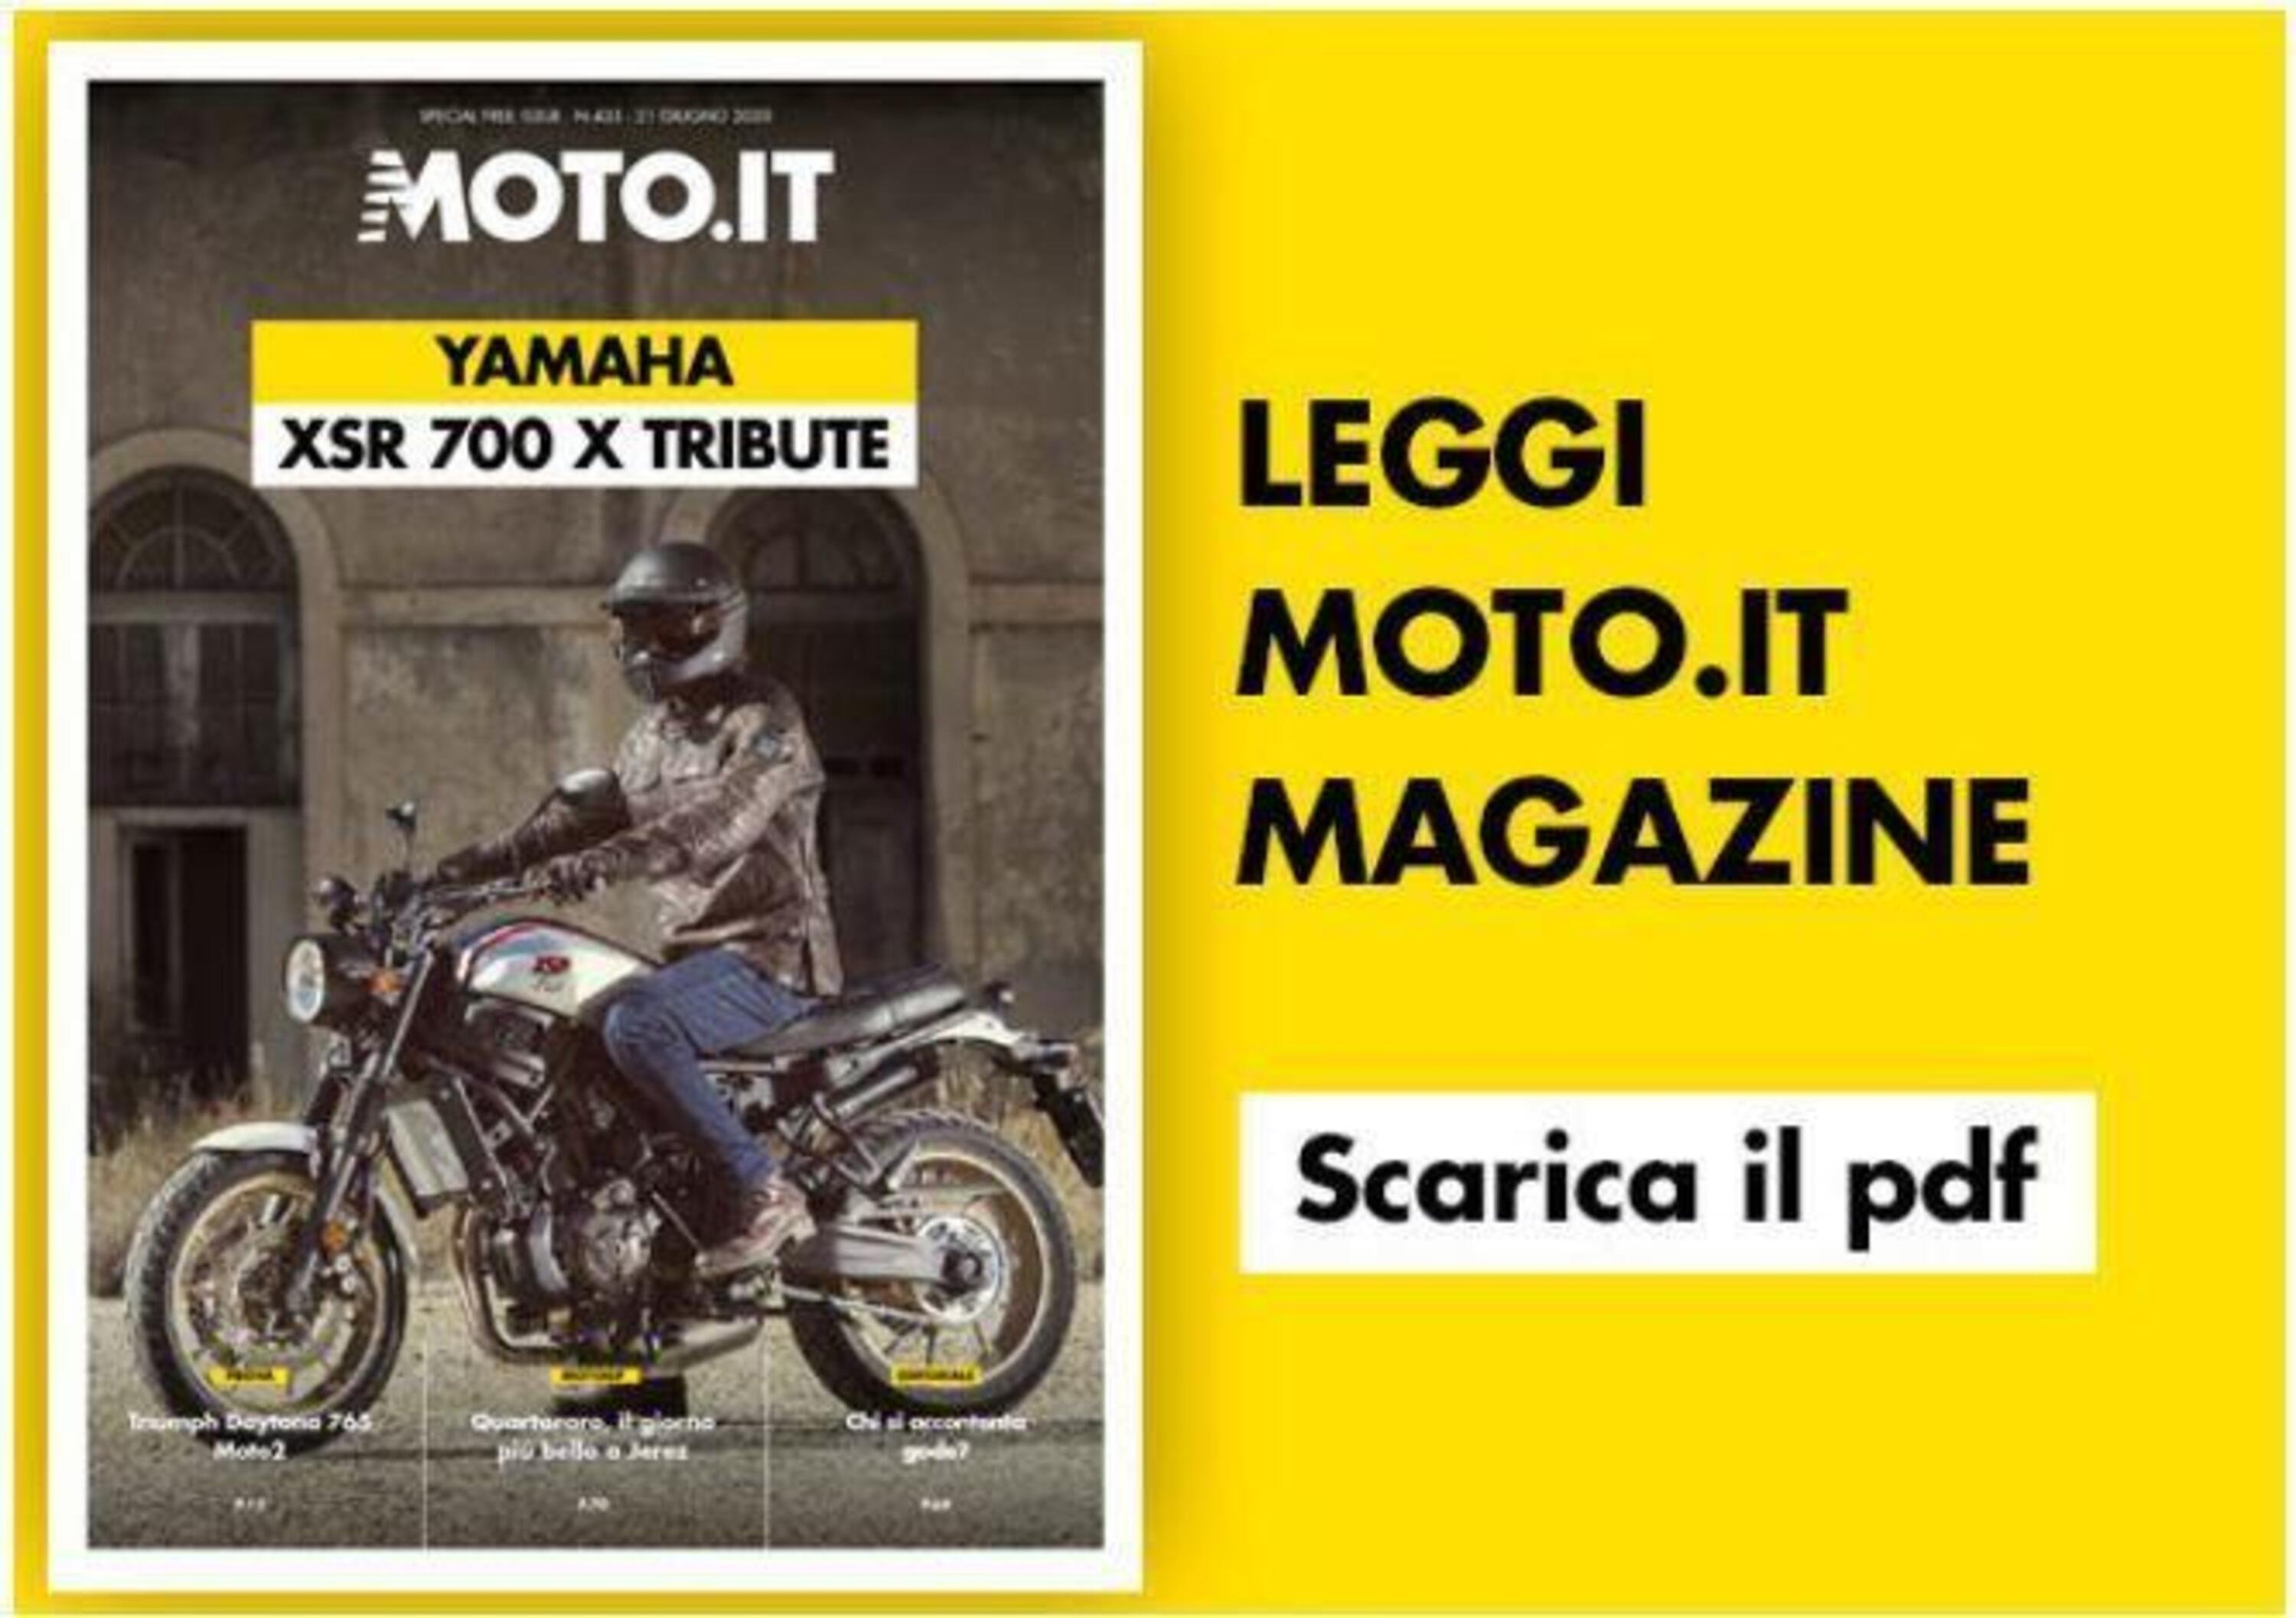 Magazine n&deg; 435: scarica e leggi il meglio di Moto.it